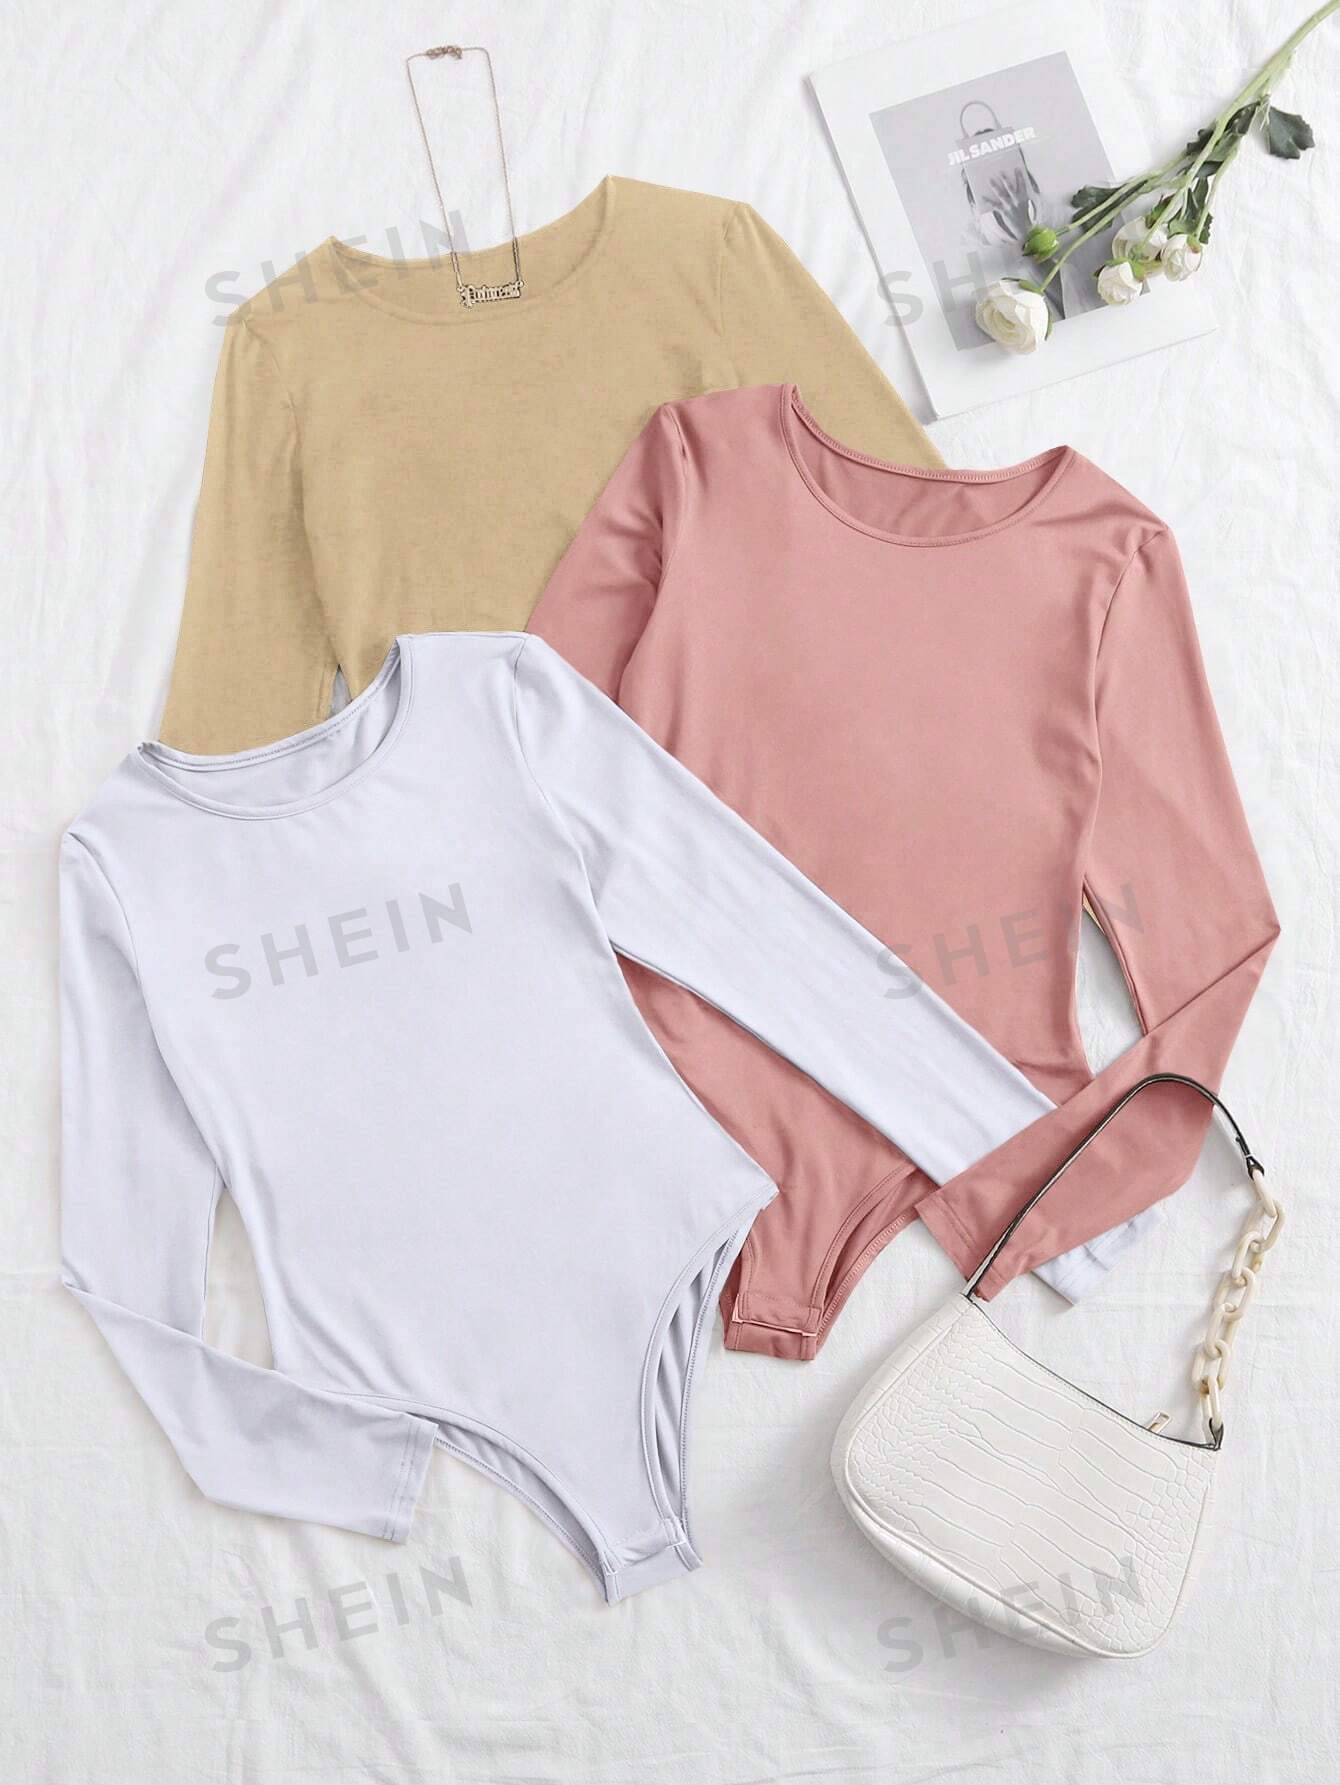 SHEIN Essnce Трехцветное облегающее боди-футболка с длинными рукавами, многоцветный shein essnce трехцветное облегающее боди футболка с длинными рукавами многоцветный